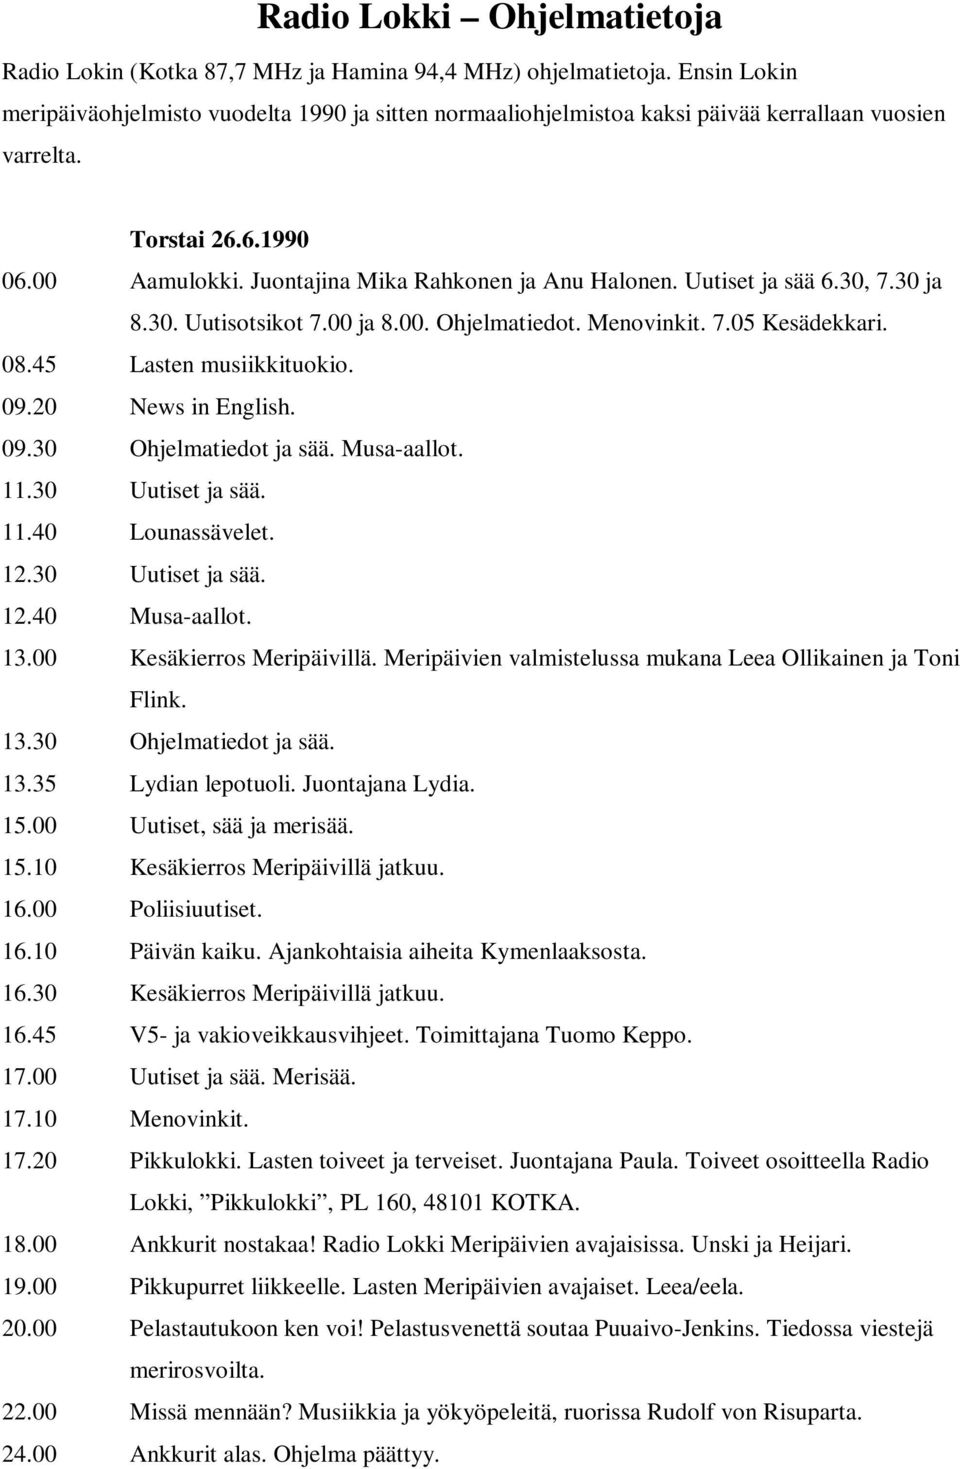 Radio Lokki Ohjelmatietoja - PDF Ilmainen lataus